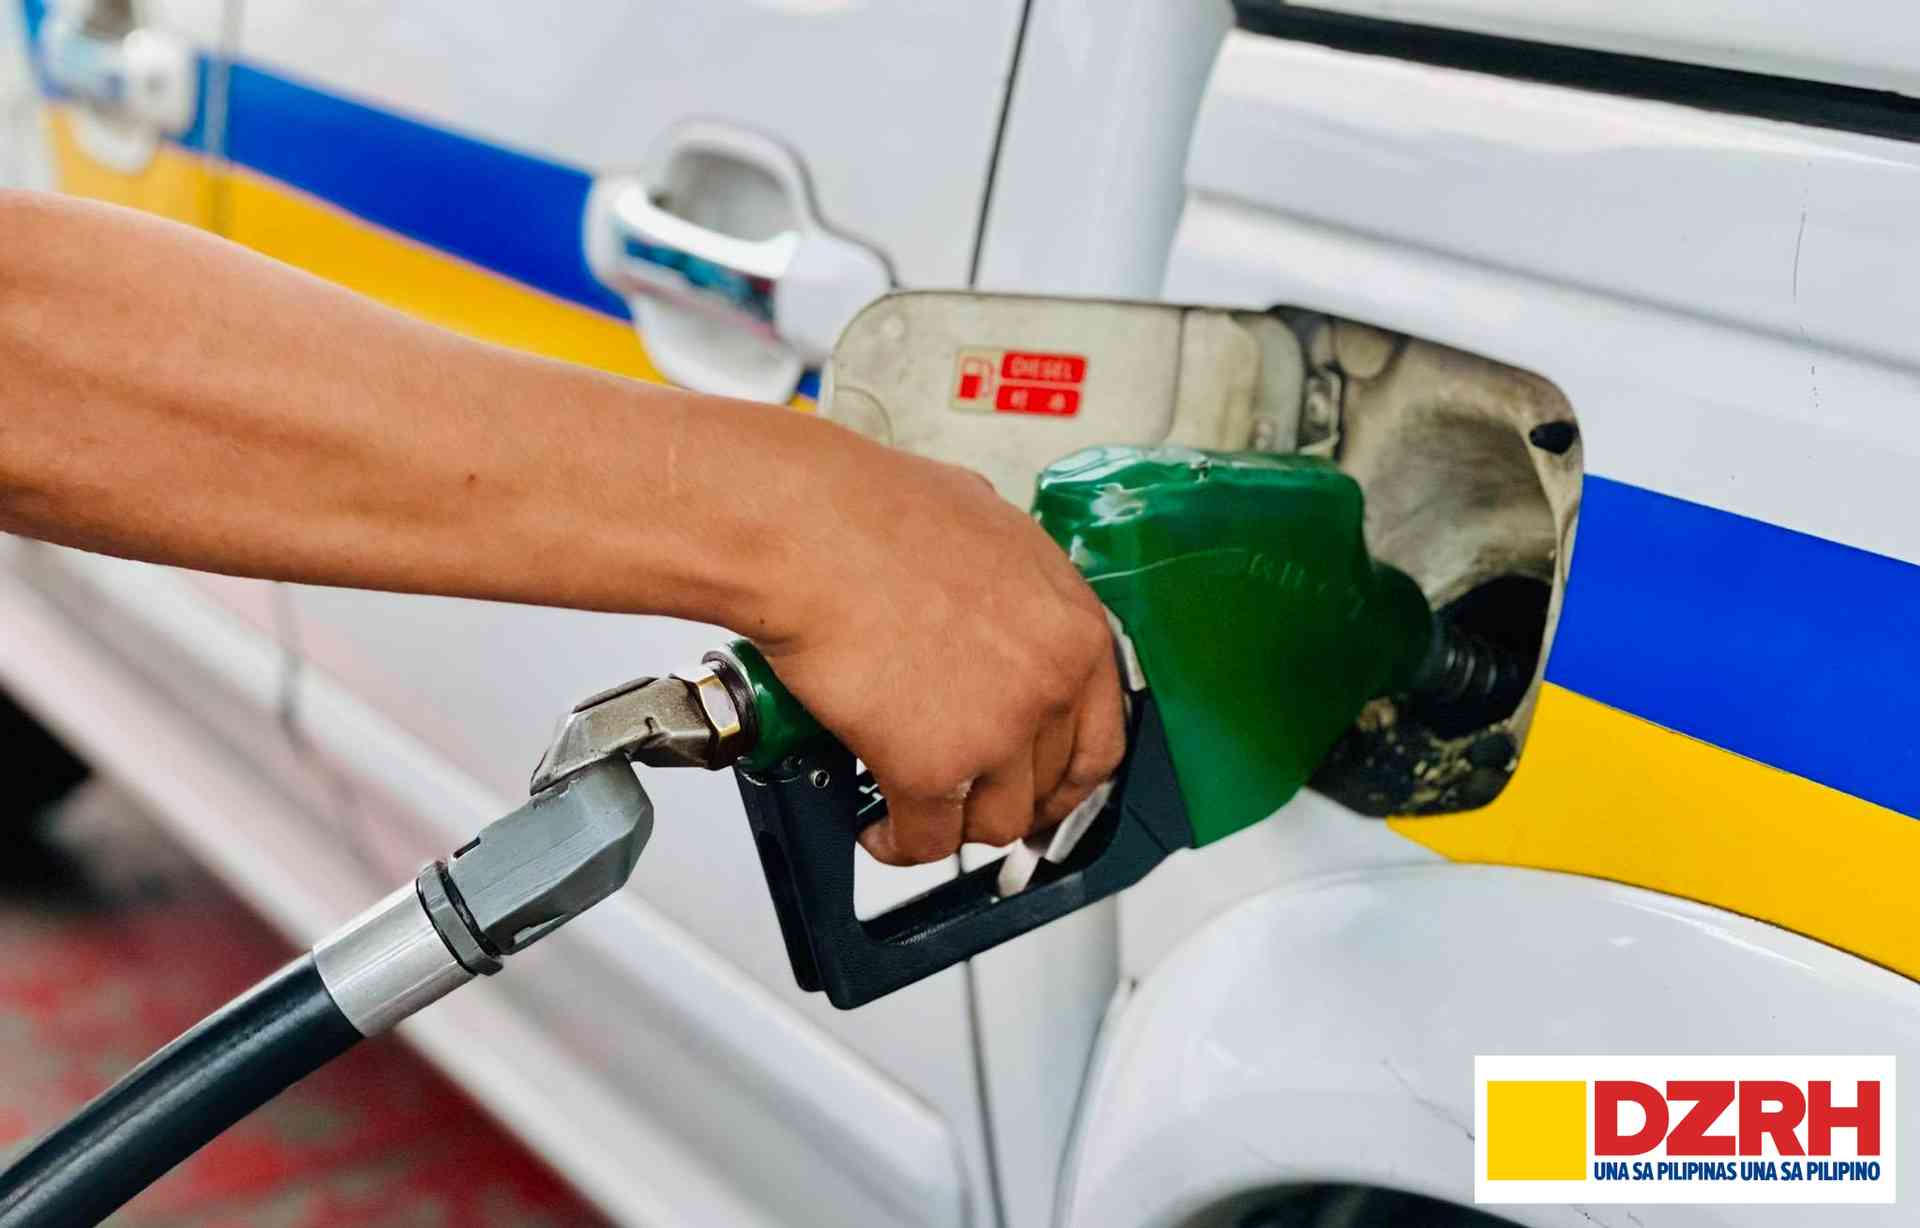 Gasoline prices up; diesel, kerosene down in last week of April